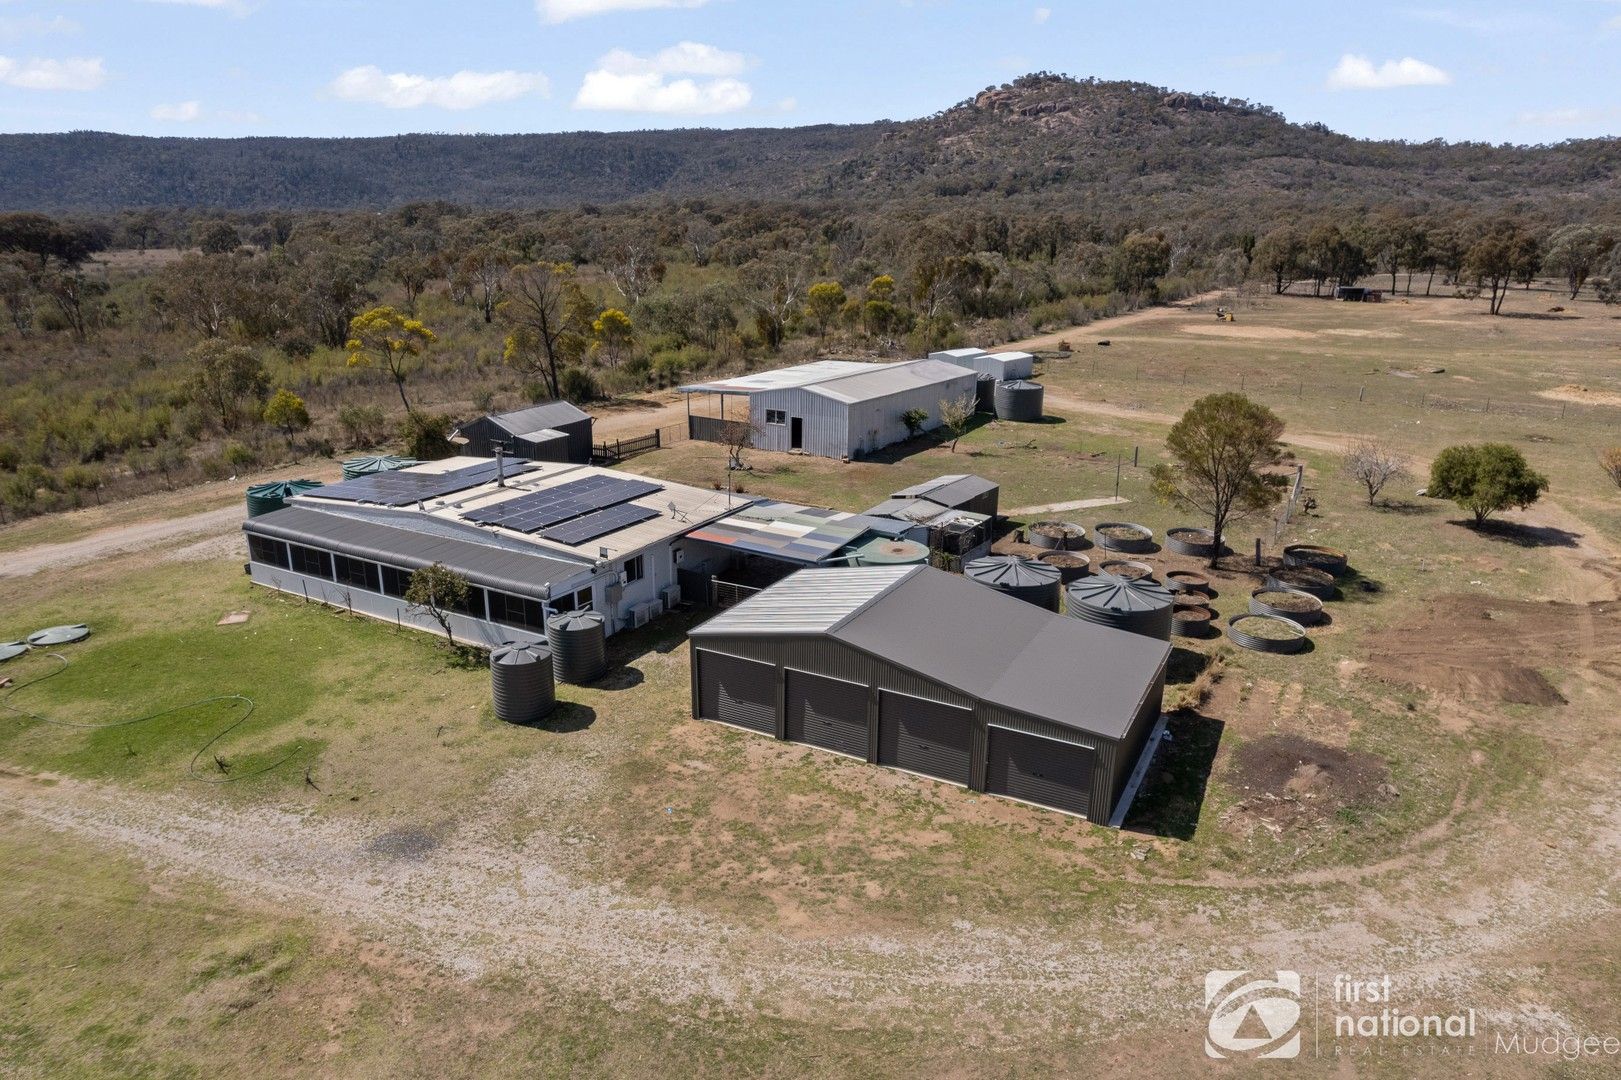 4 bedrooms Rural in  MUDGEE NSW, 2850